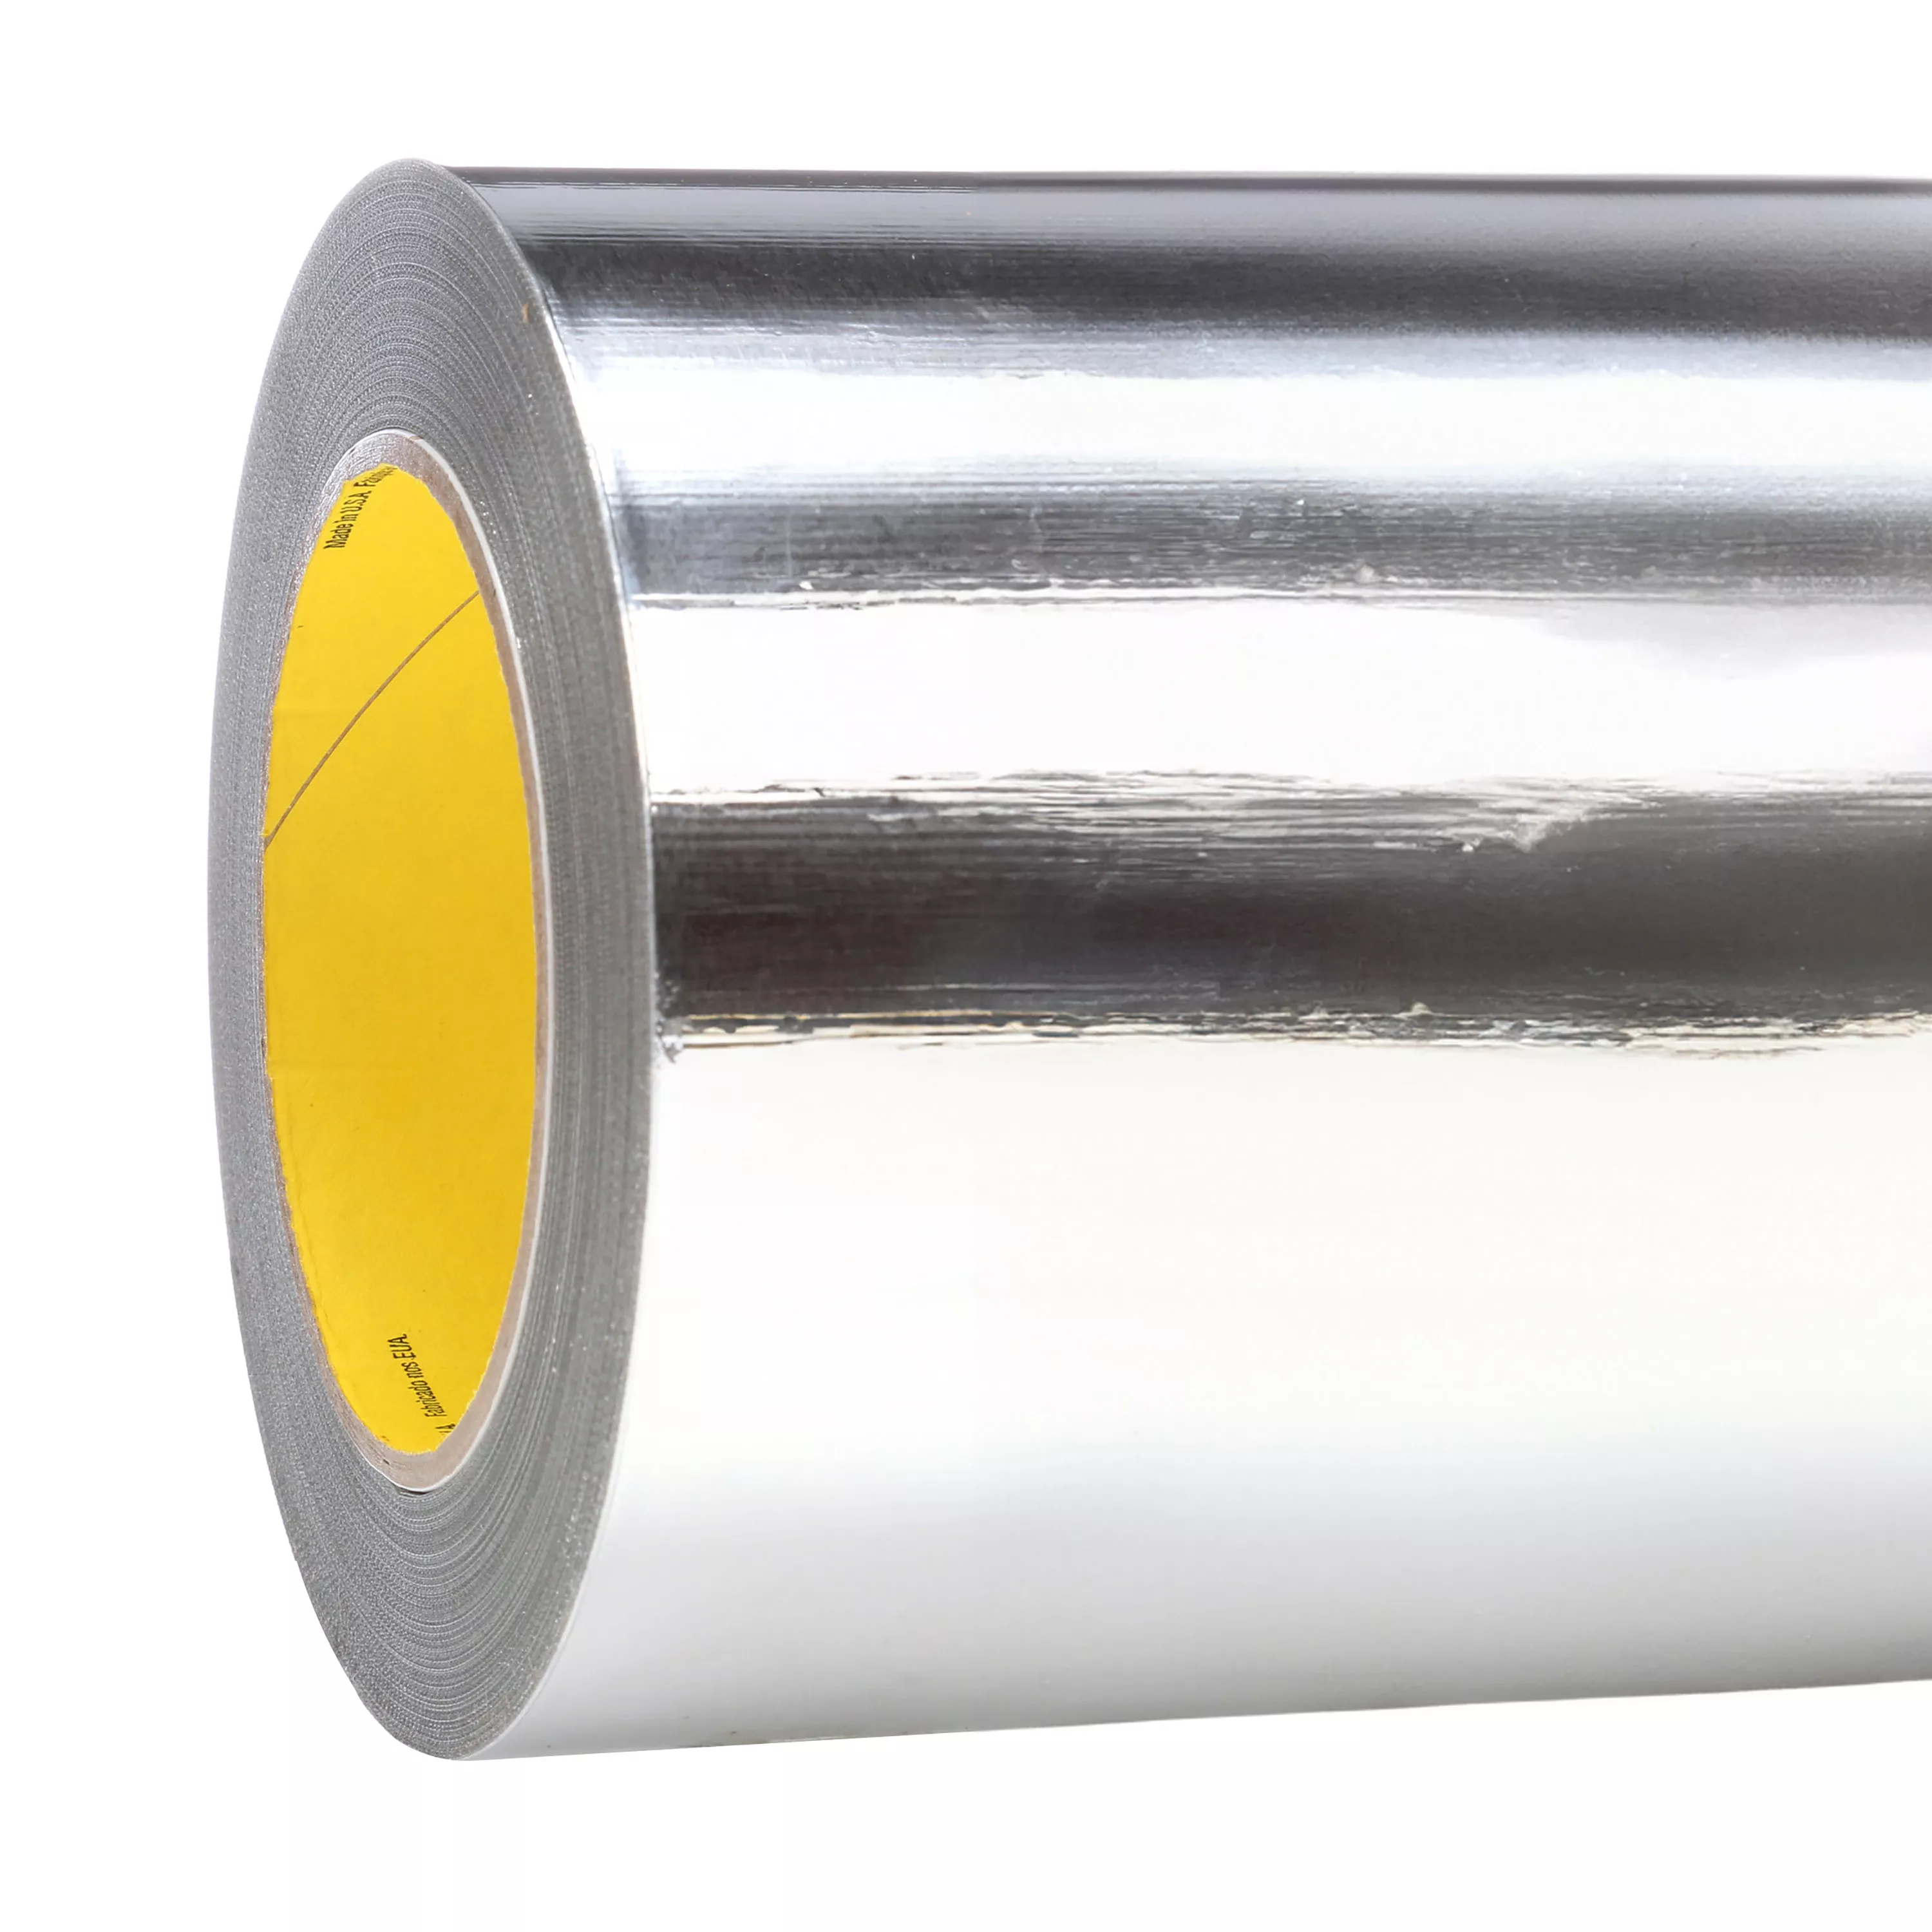 3M™ High Temperature Aluminum Foil Tape 433L, Silver, 23 in x 60 yd, 3.5
mil, 1 Roll/Case